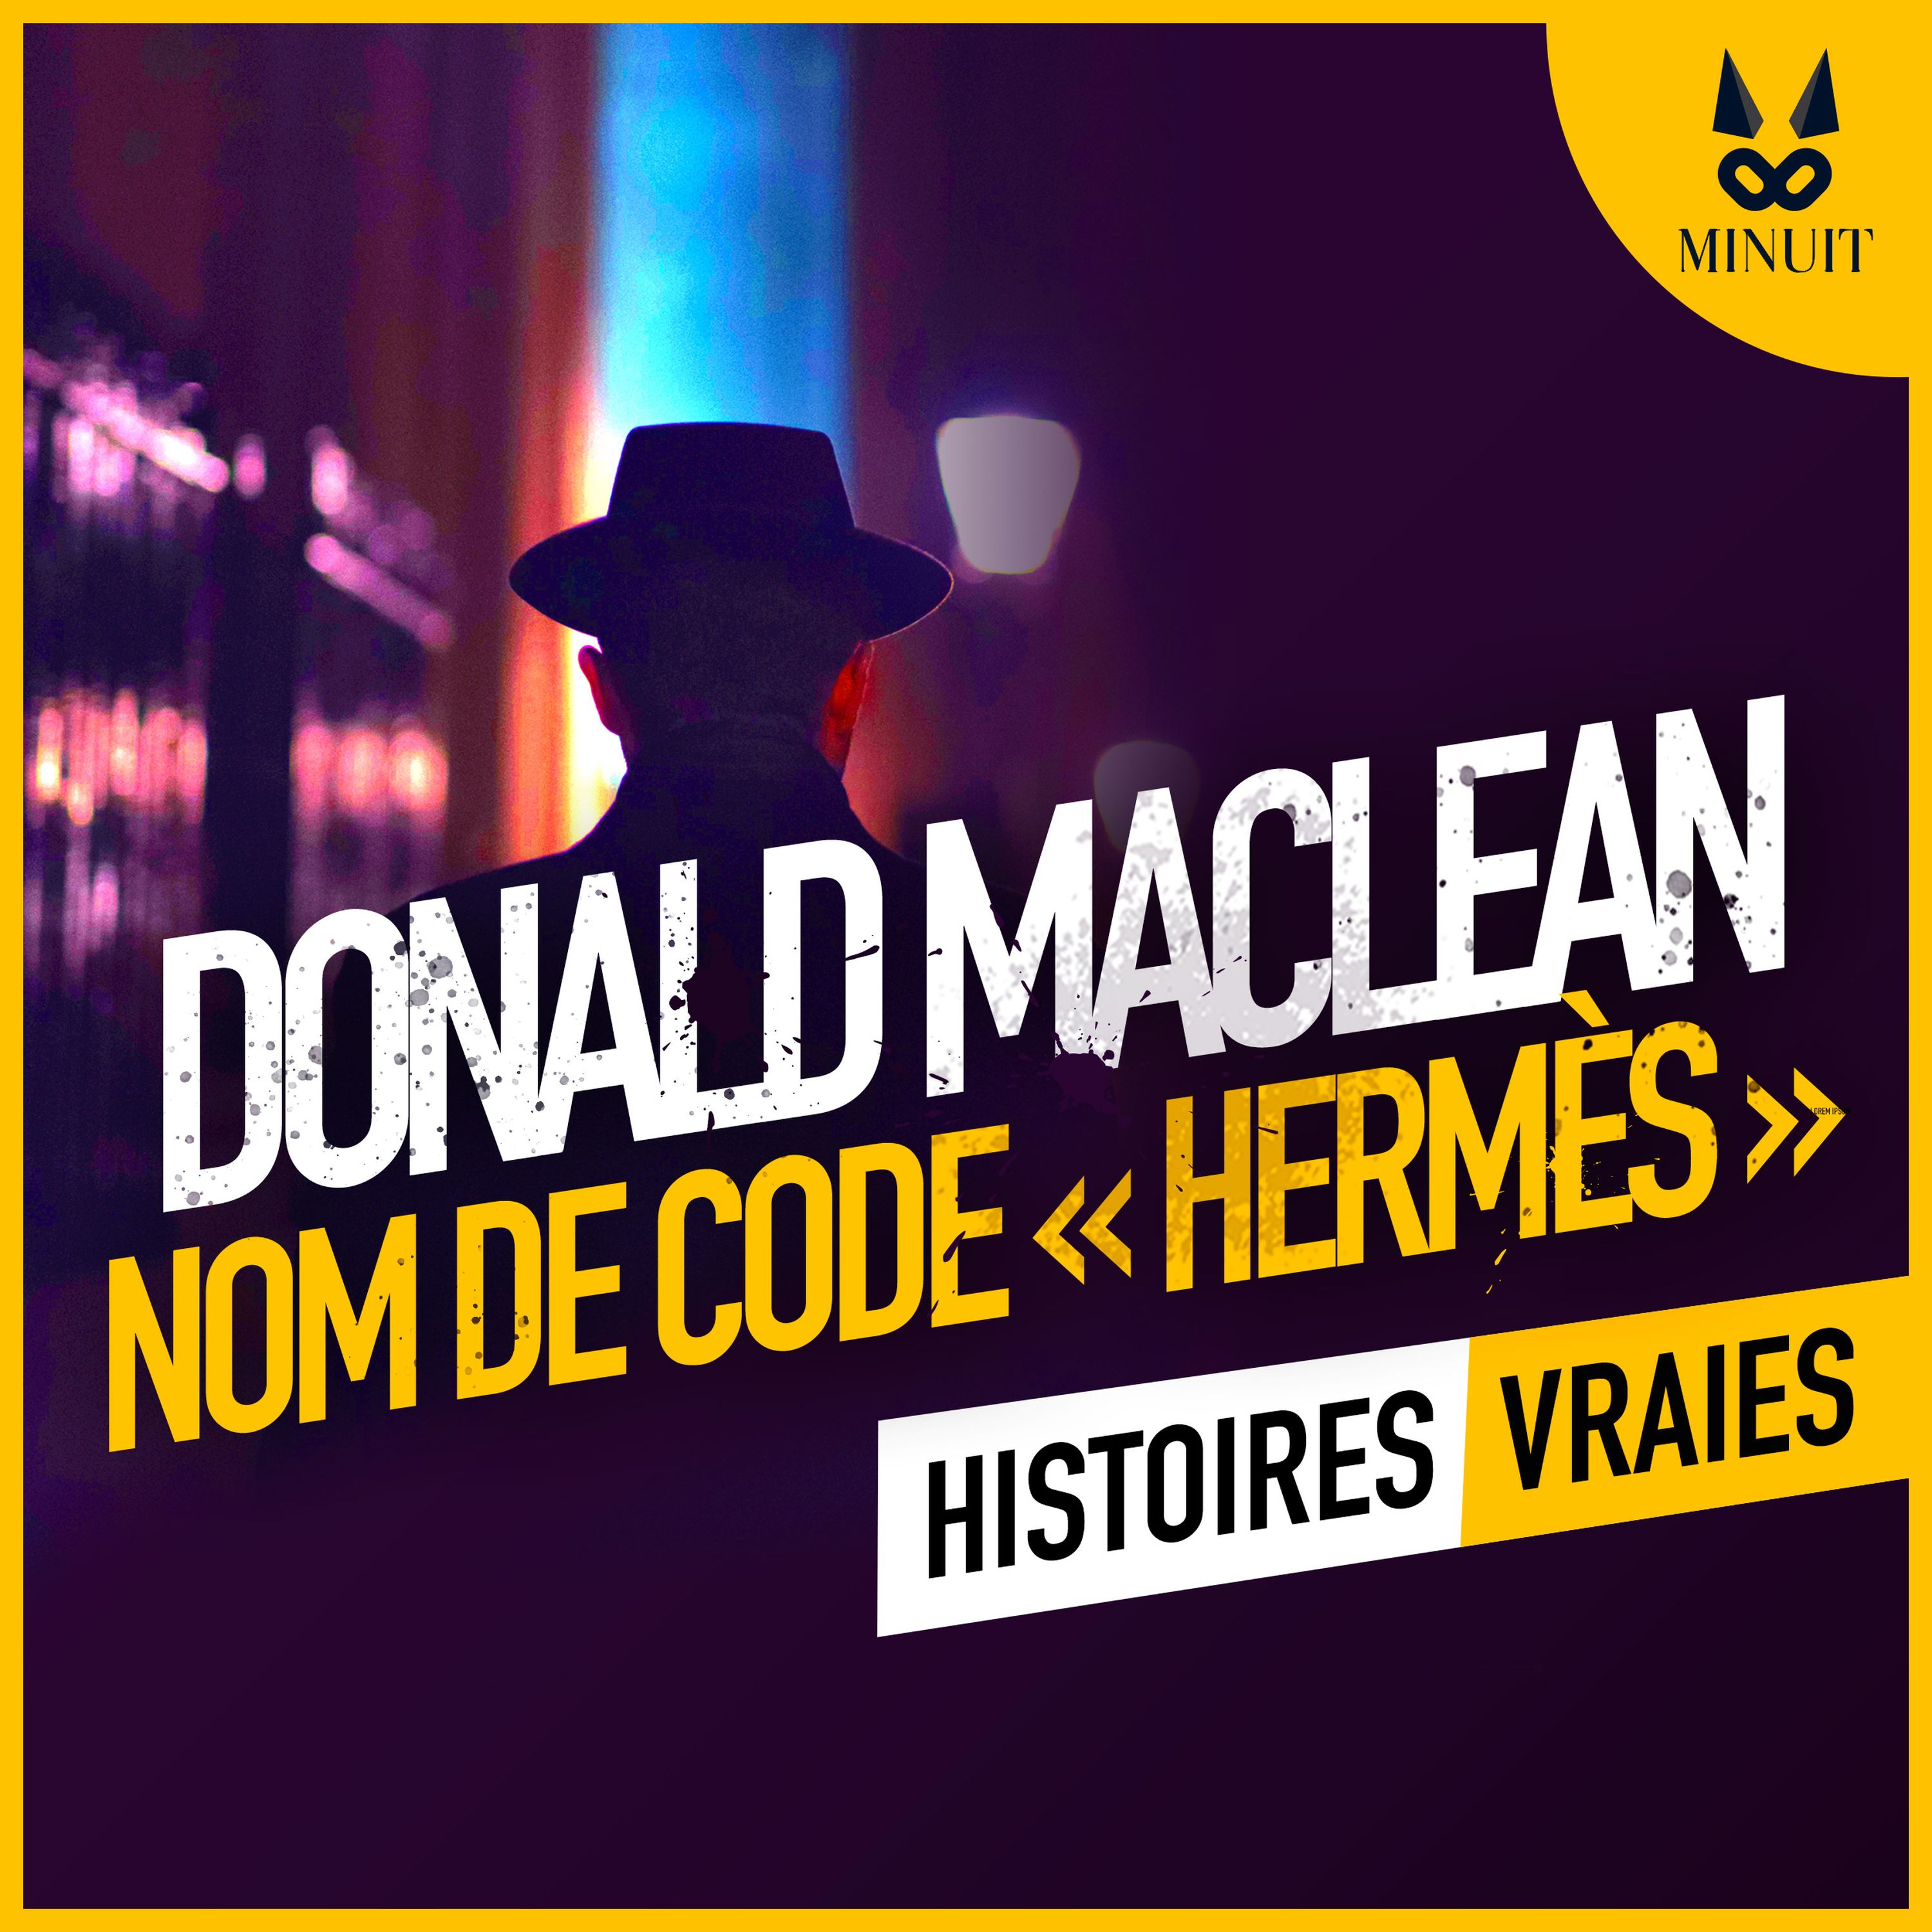 Donald Maclean : nom de code Hermès • Episode 2 sur 3